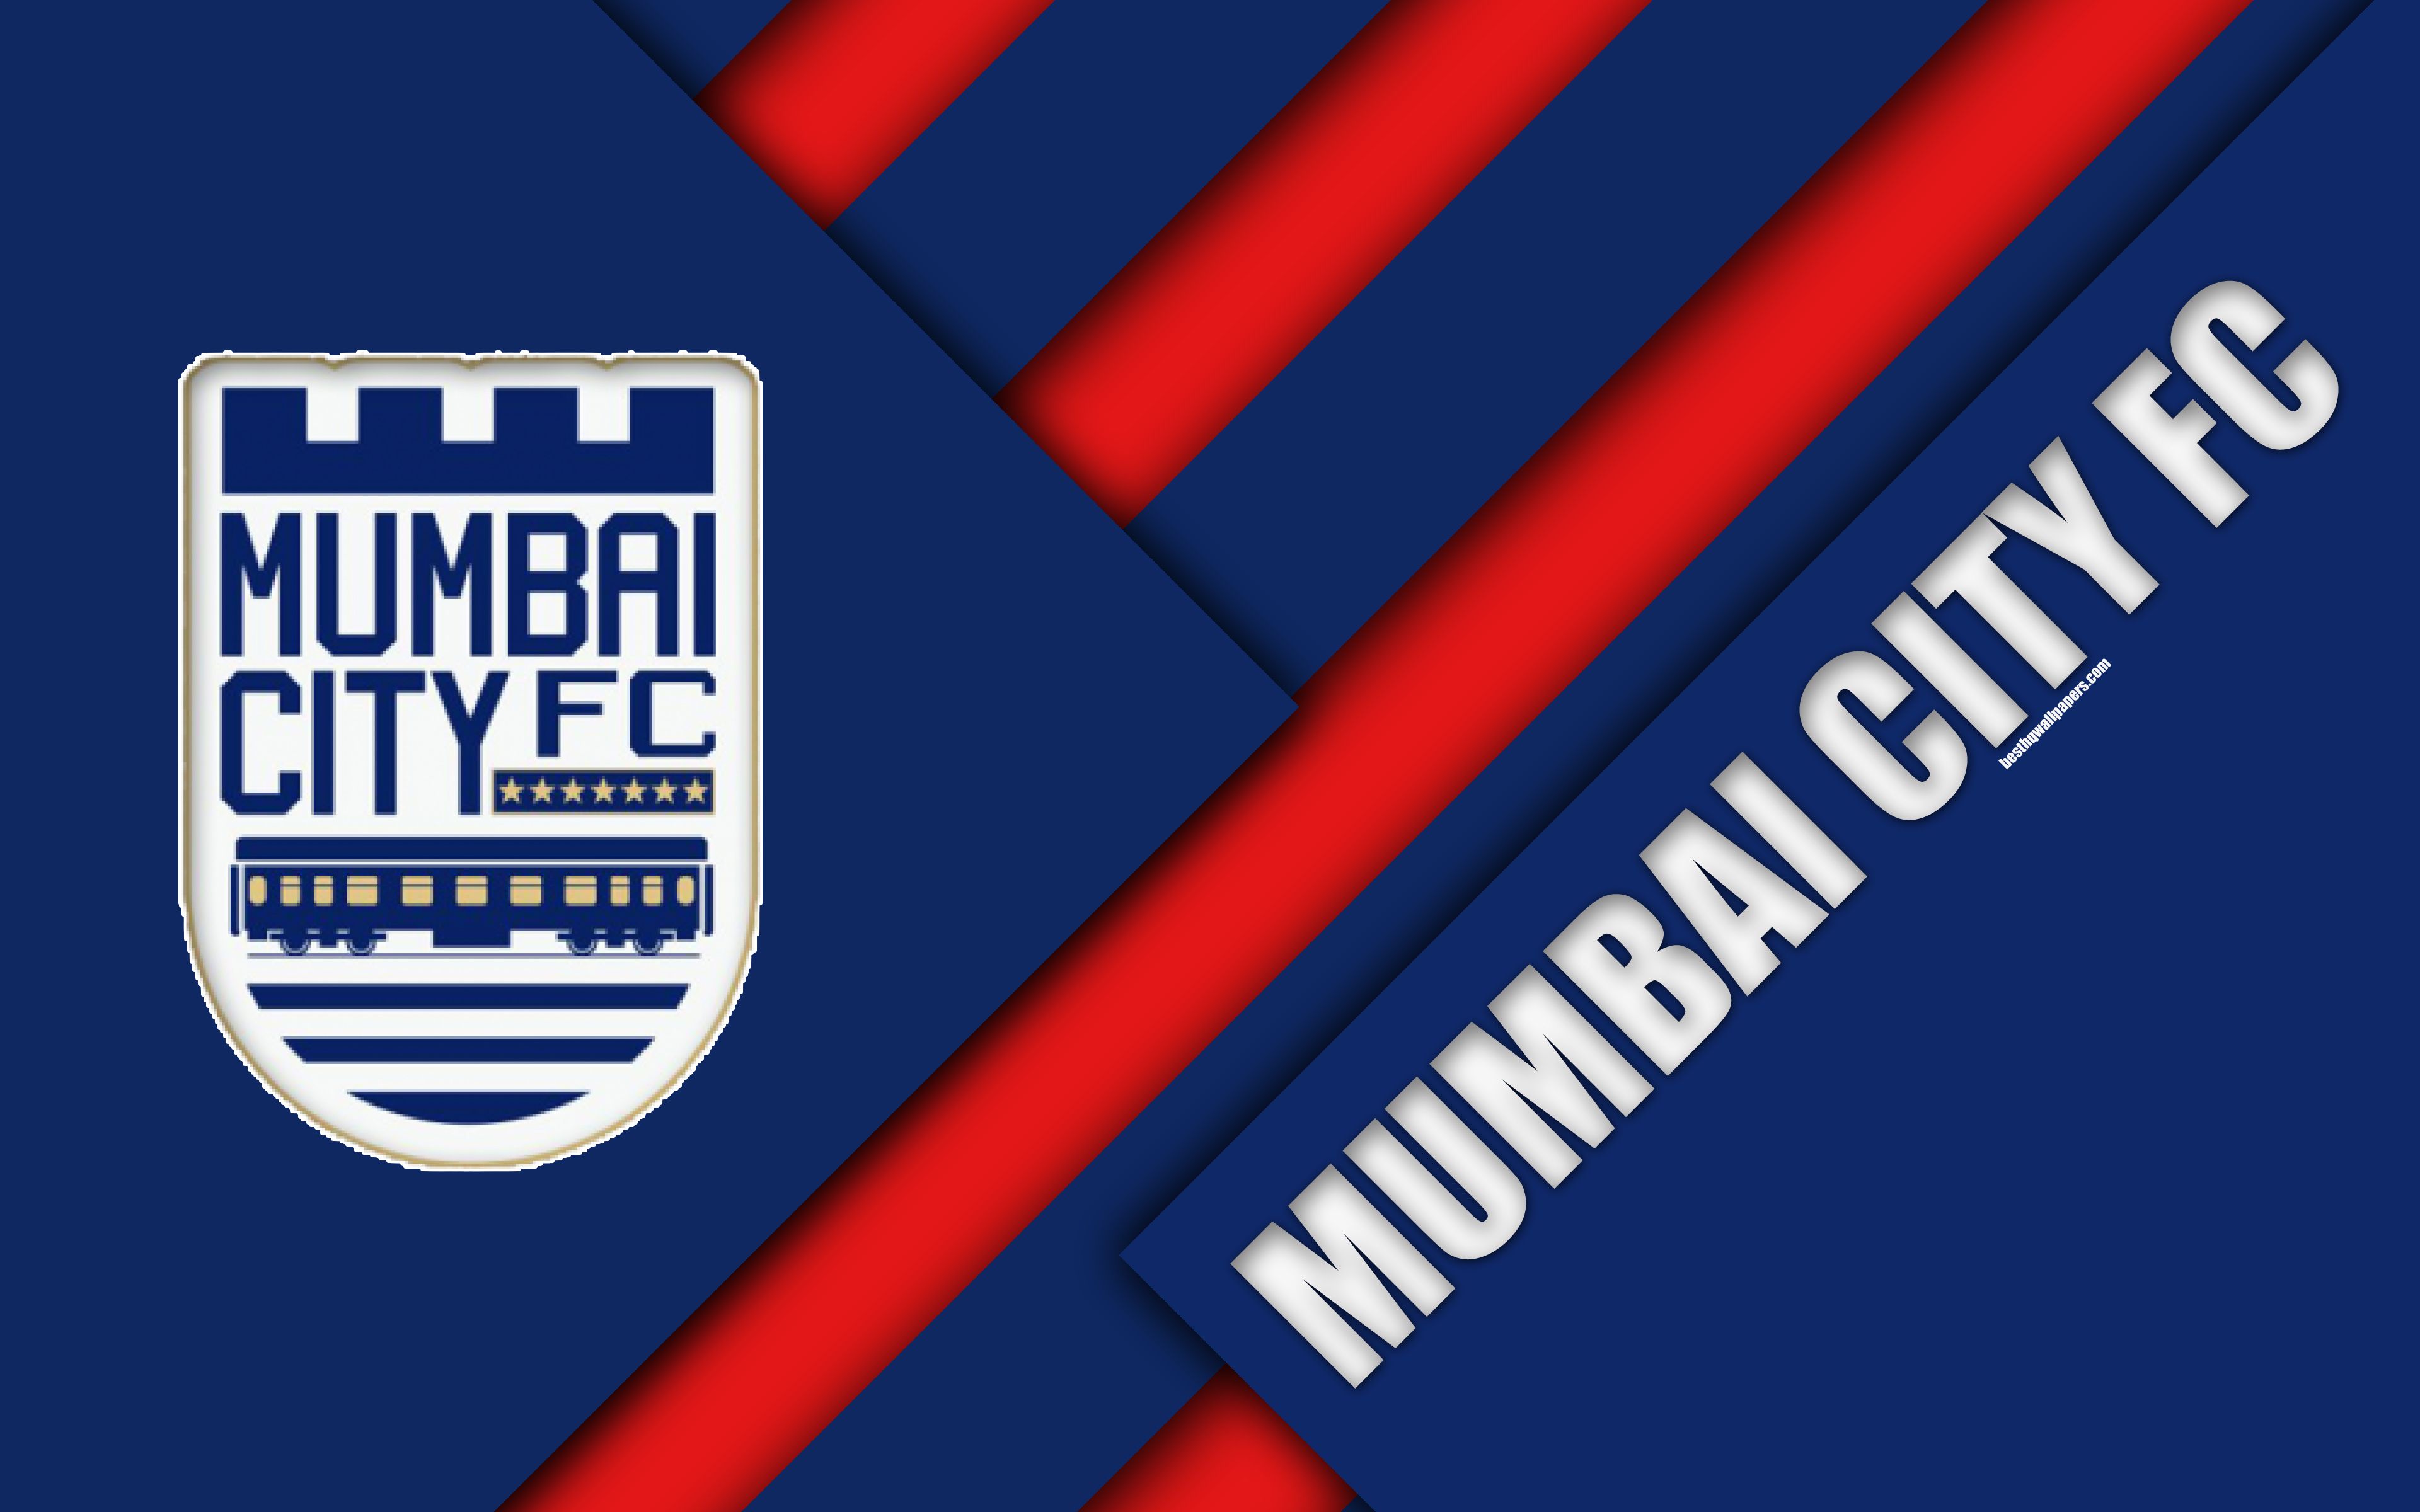 Mumbai City Fc, 4k, Logo, Material Design, Blue Red Mumbai City Fc